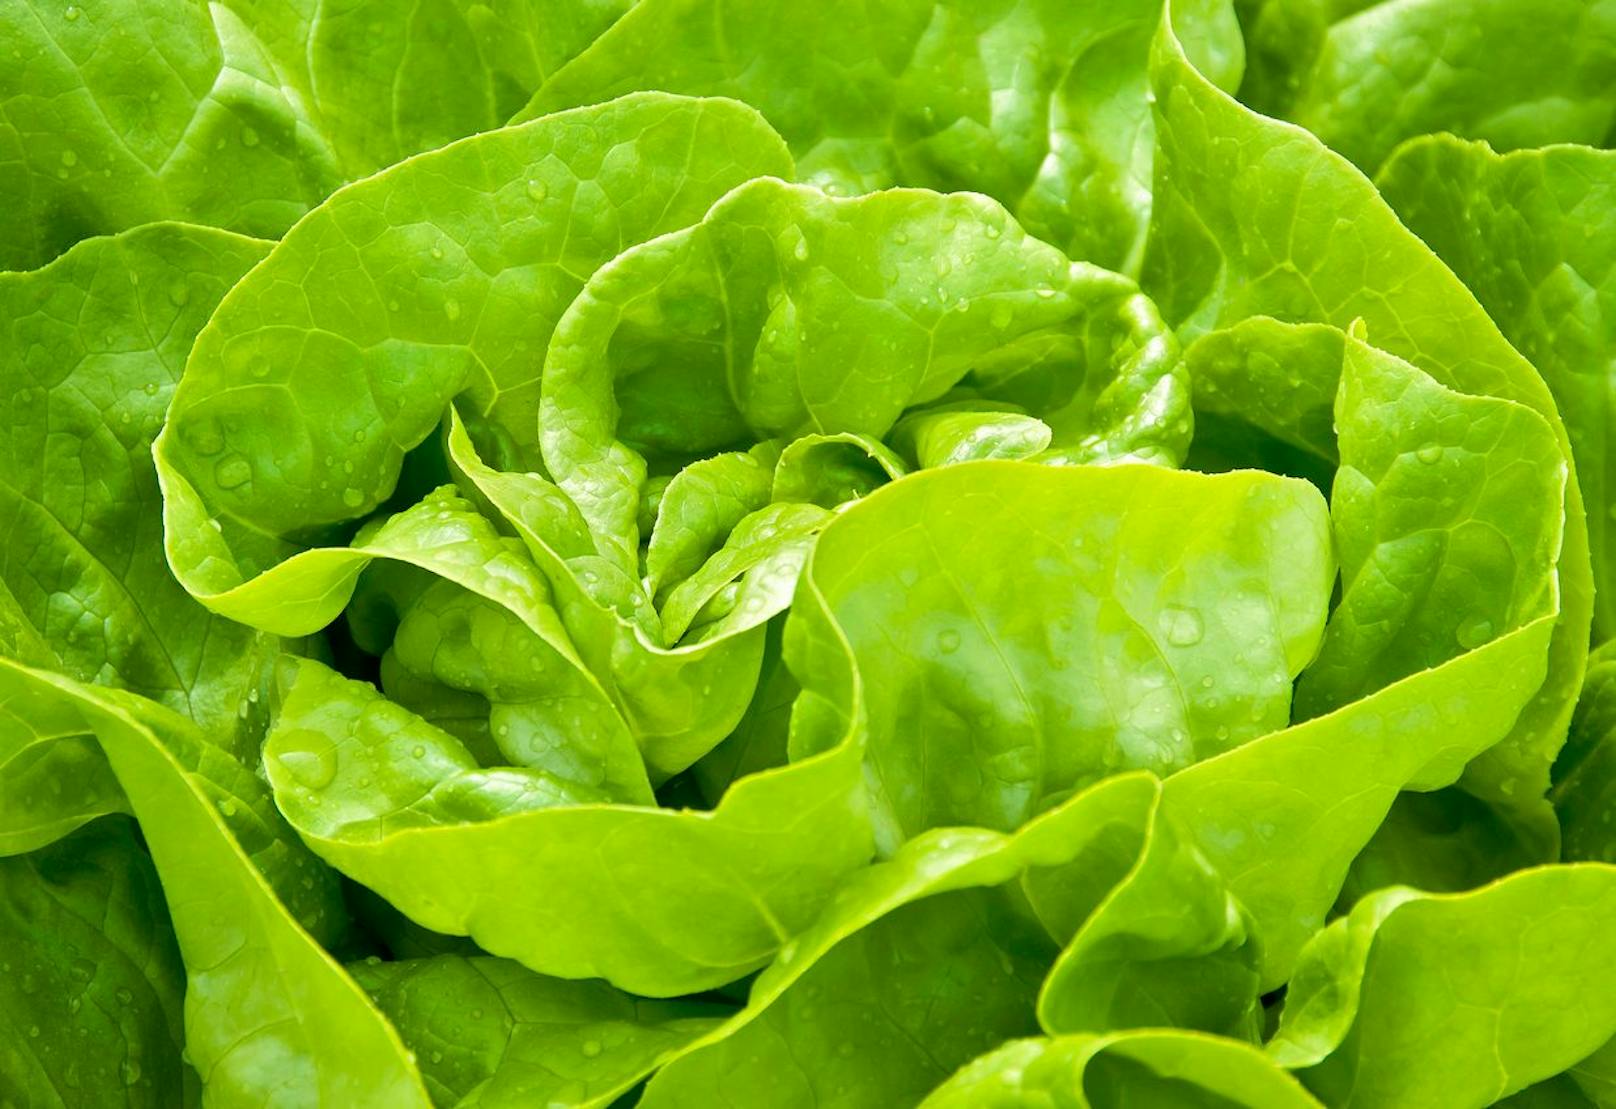 Da haben wir den Salat! Das gesunde Gemüse wird mittels Gen-Technik für Diabetiker noch gesünder: Die Tabletten daraus werden besser vom Körper verarbeitet, als herkömmliche Insulin-Spritzen.